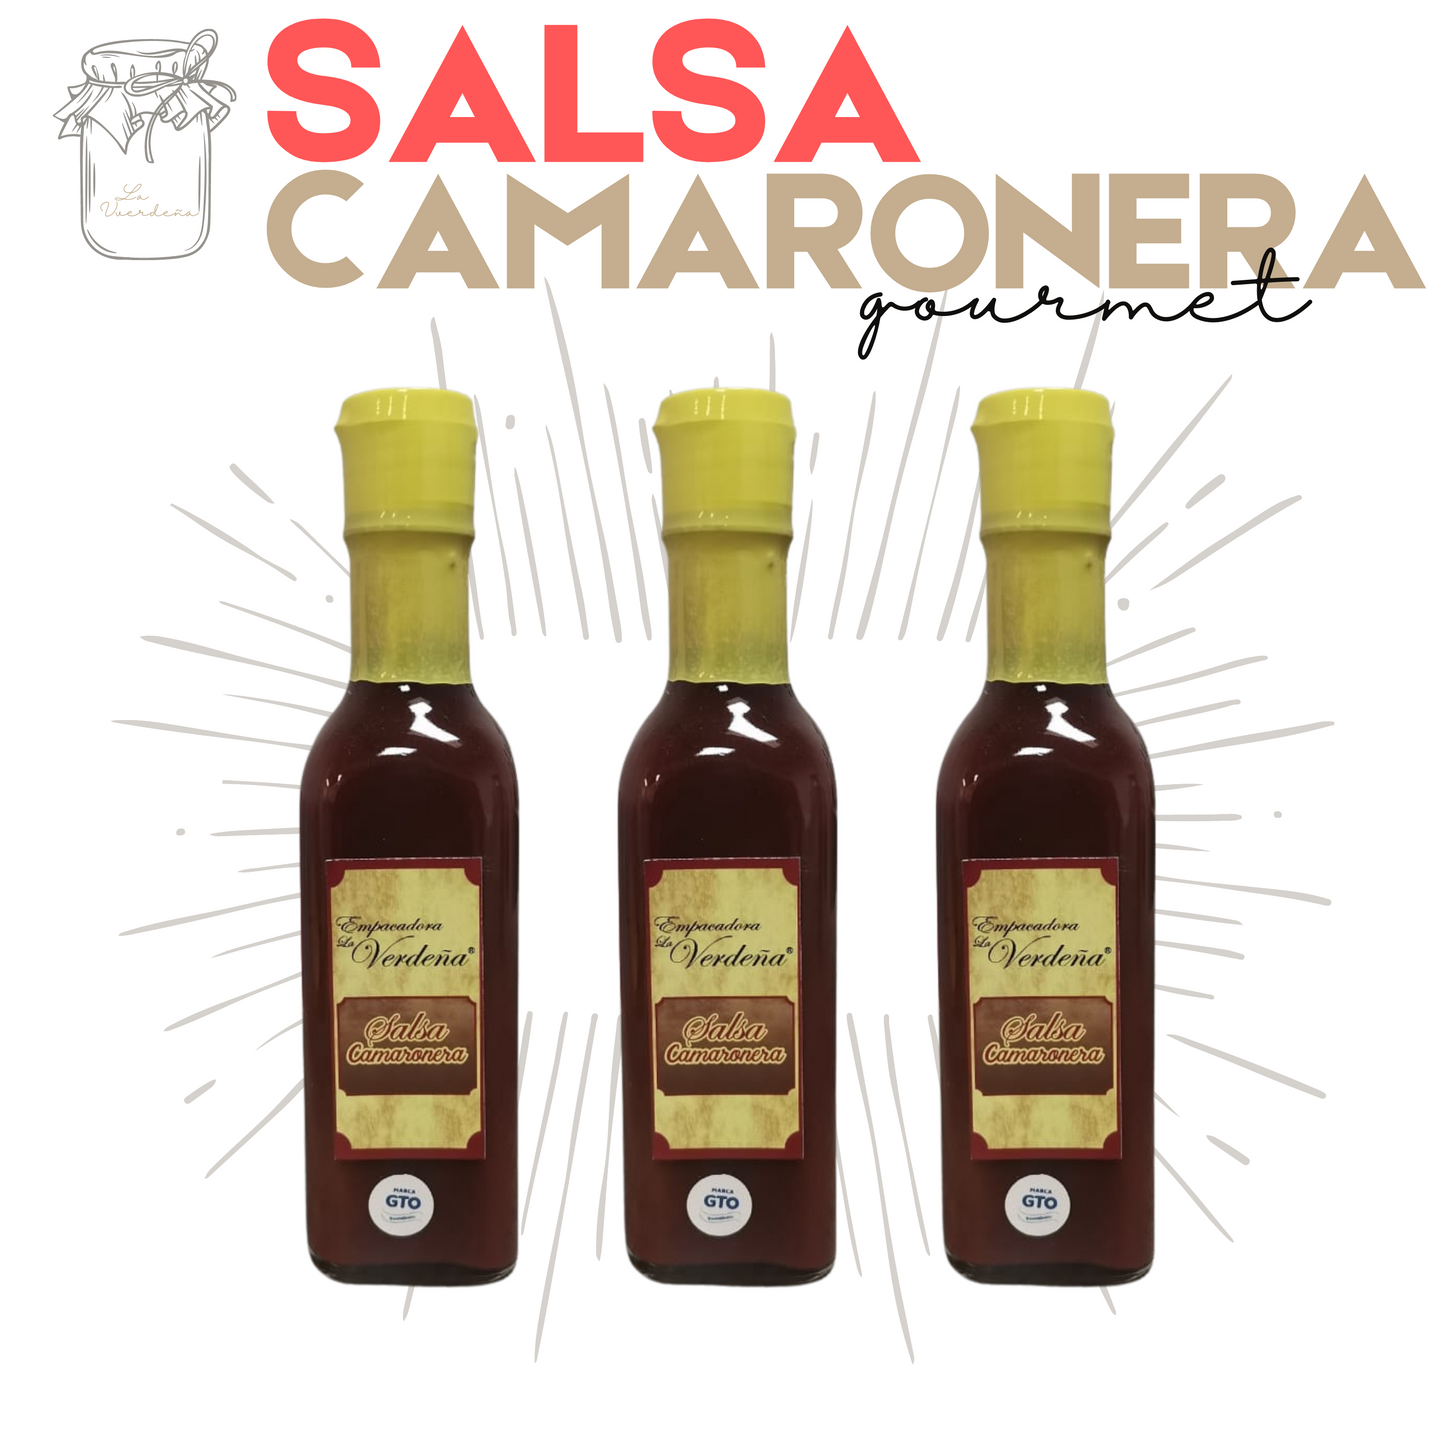 Salsa Camaronera | Cóctel de camarones | Gourmet | 3 botellas | Mexpofood